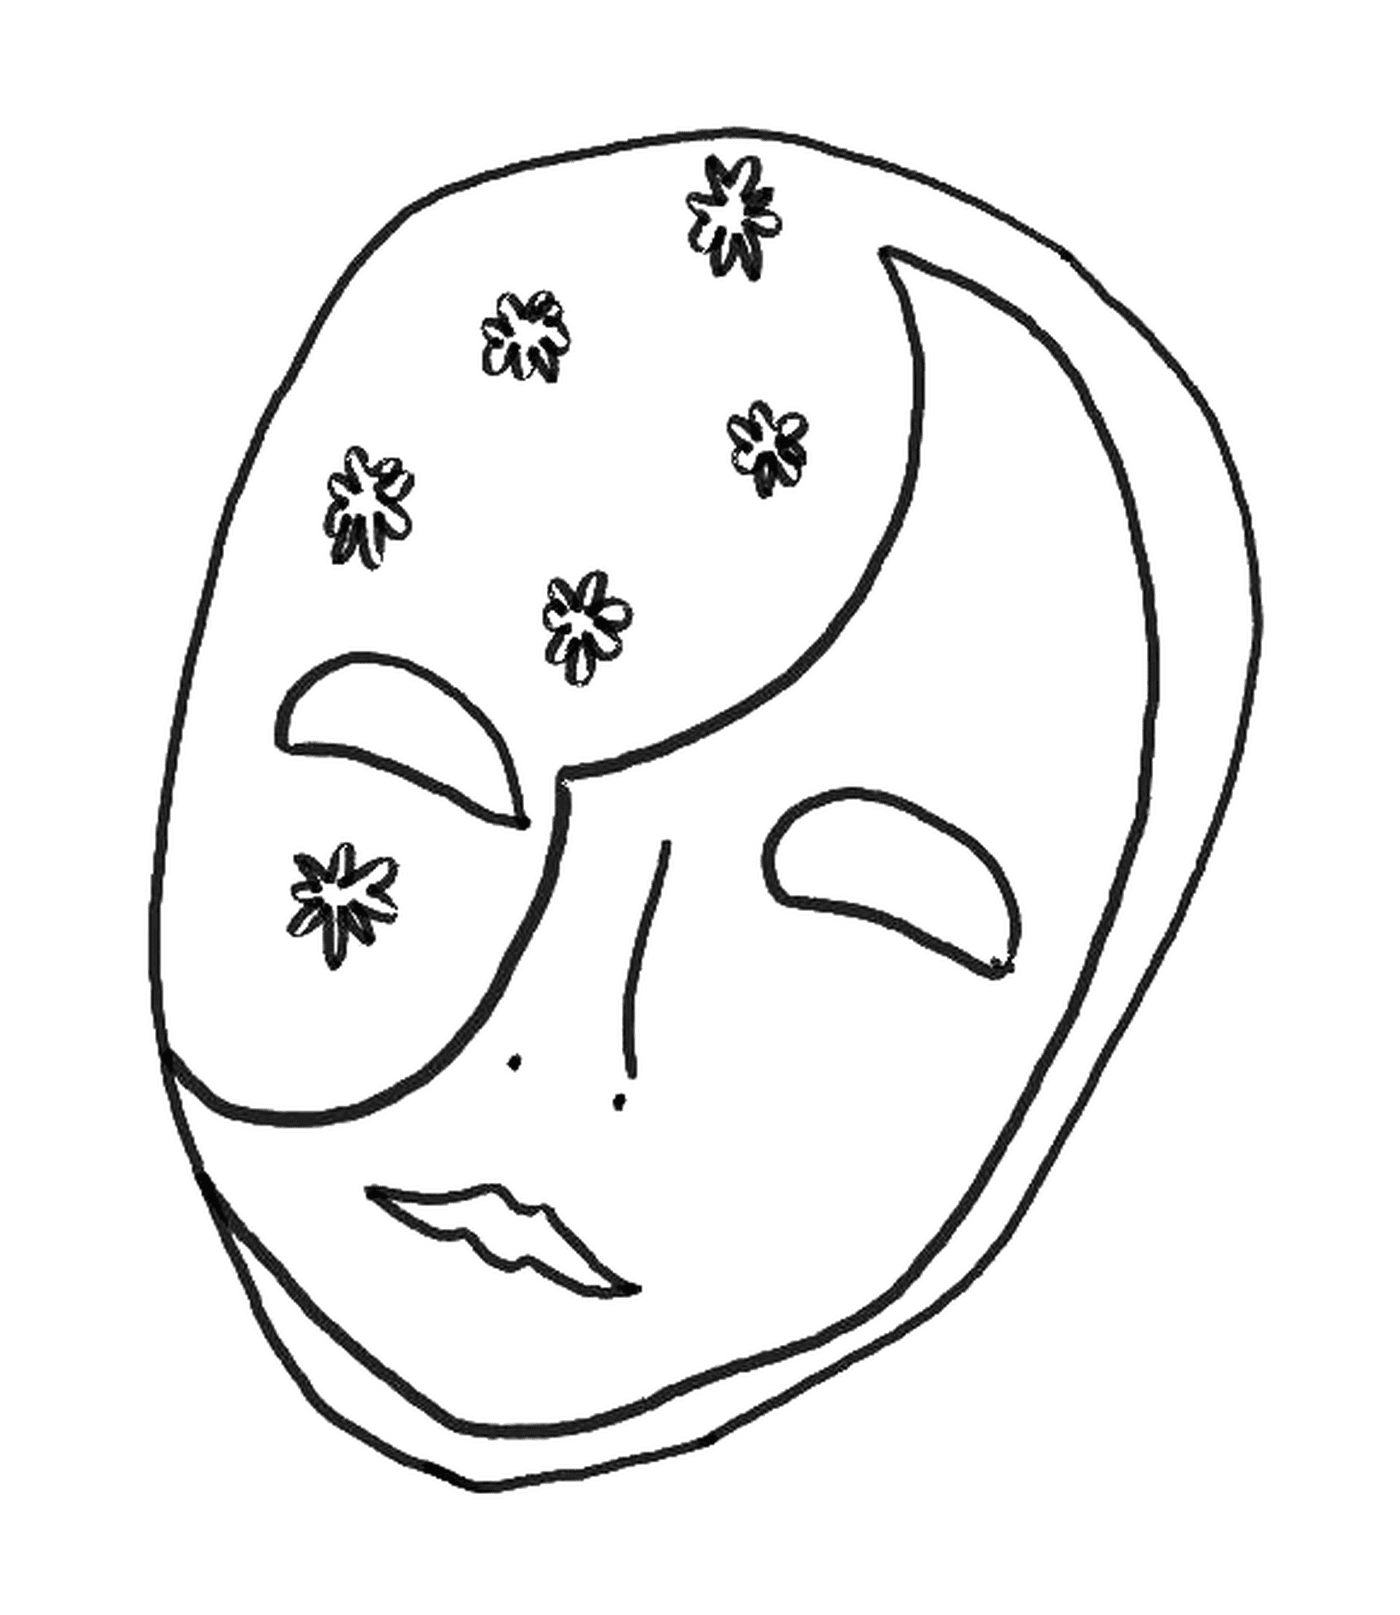  Eine Maske für Mardi Gras mit Blumen 